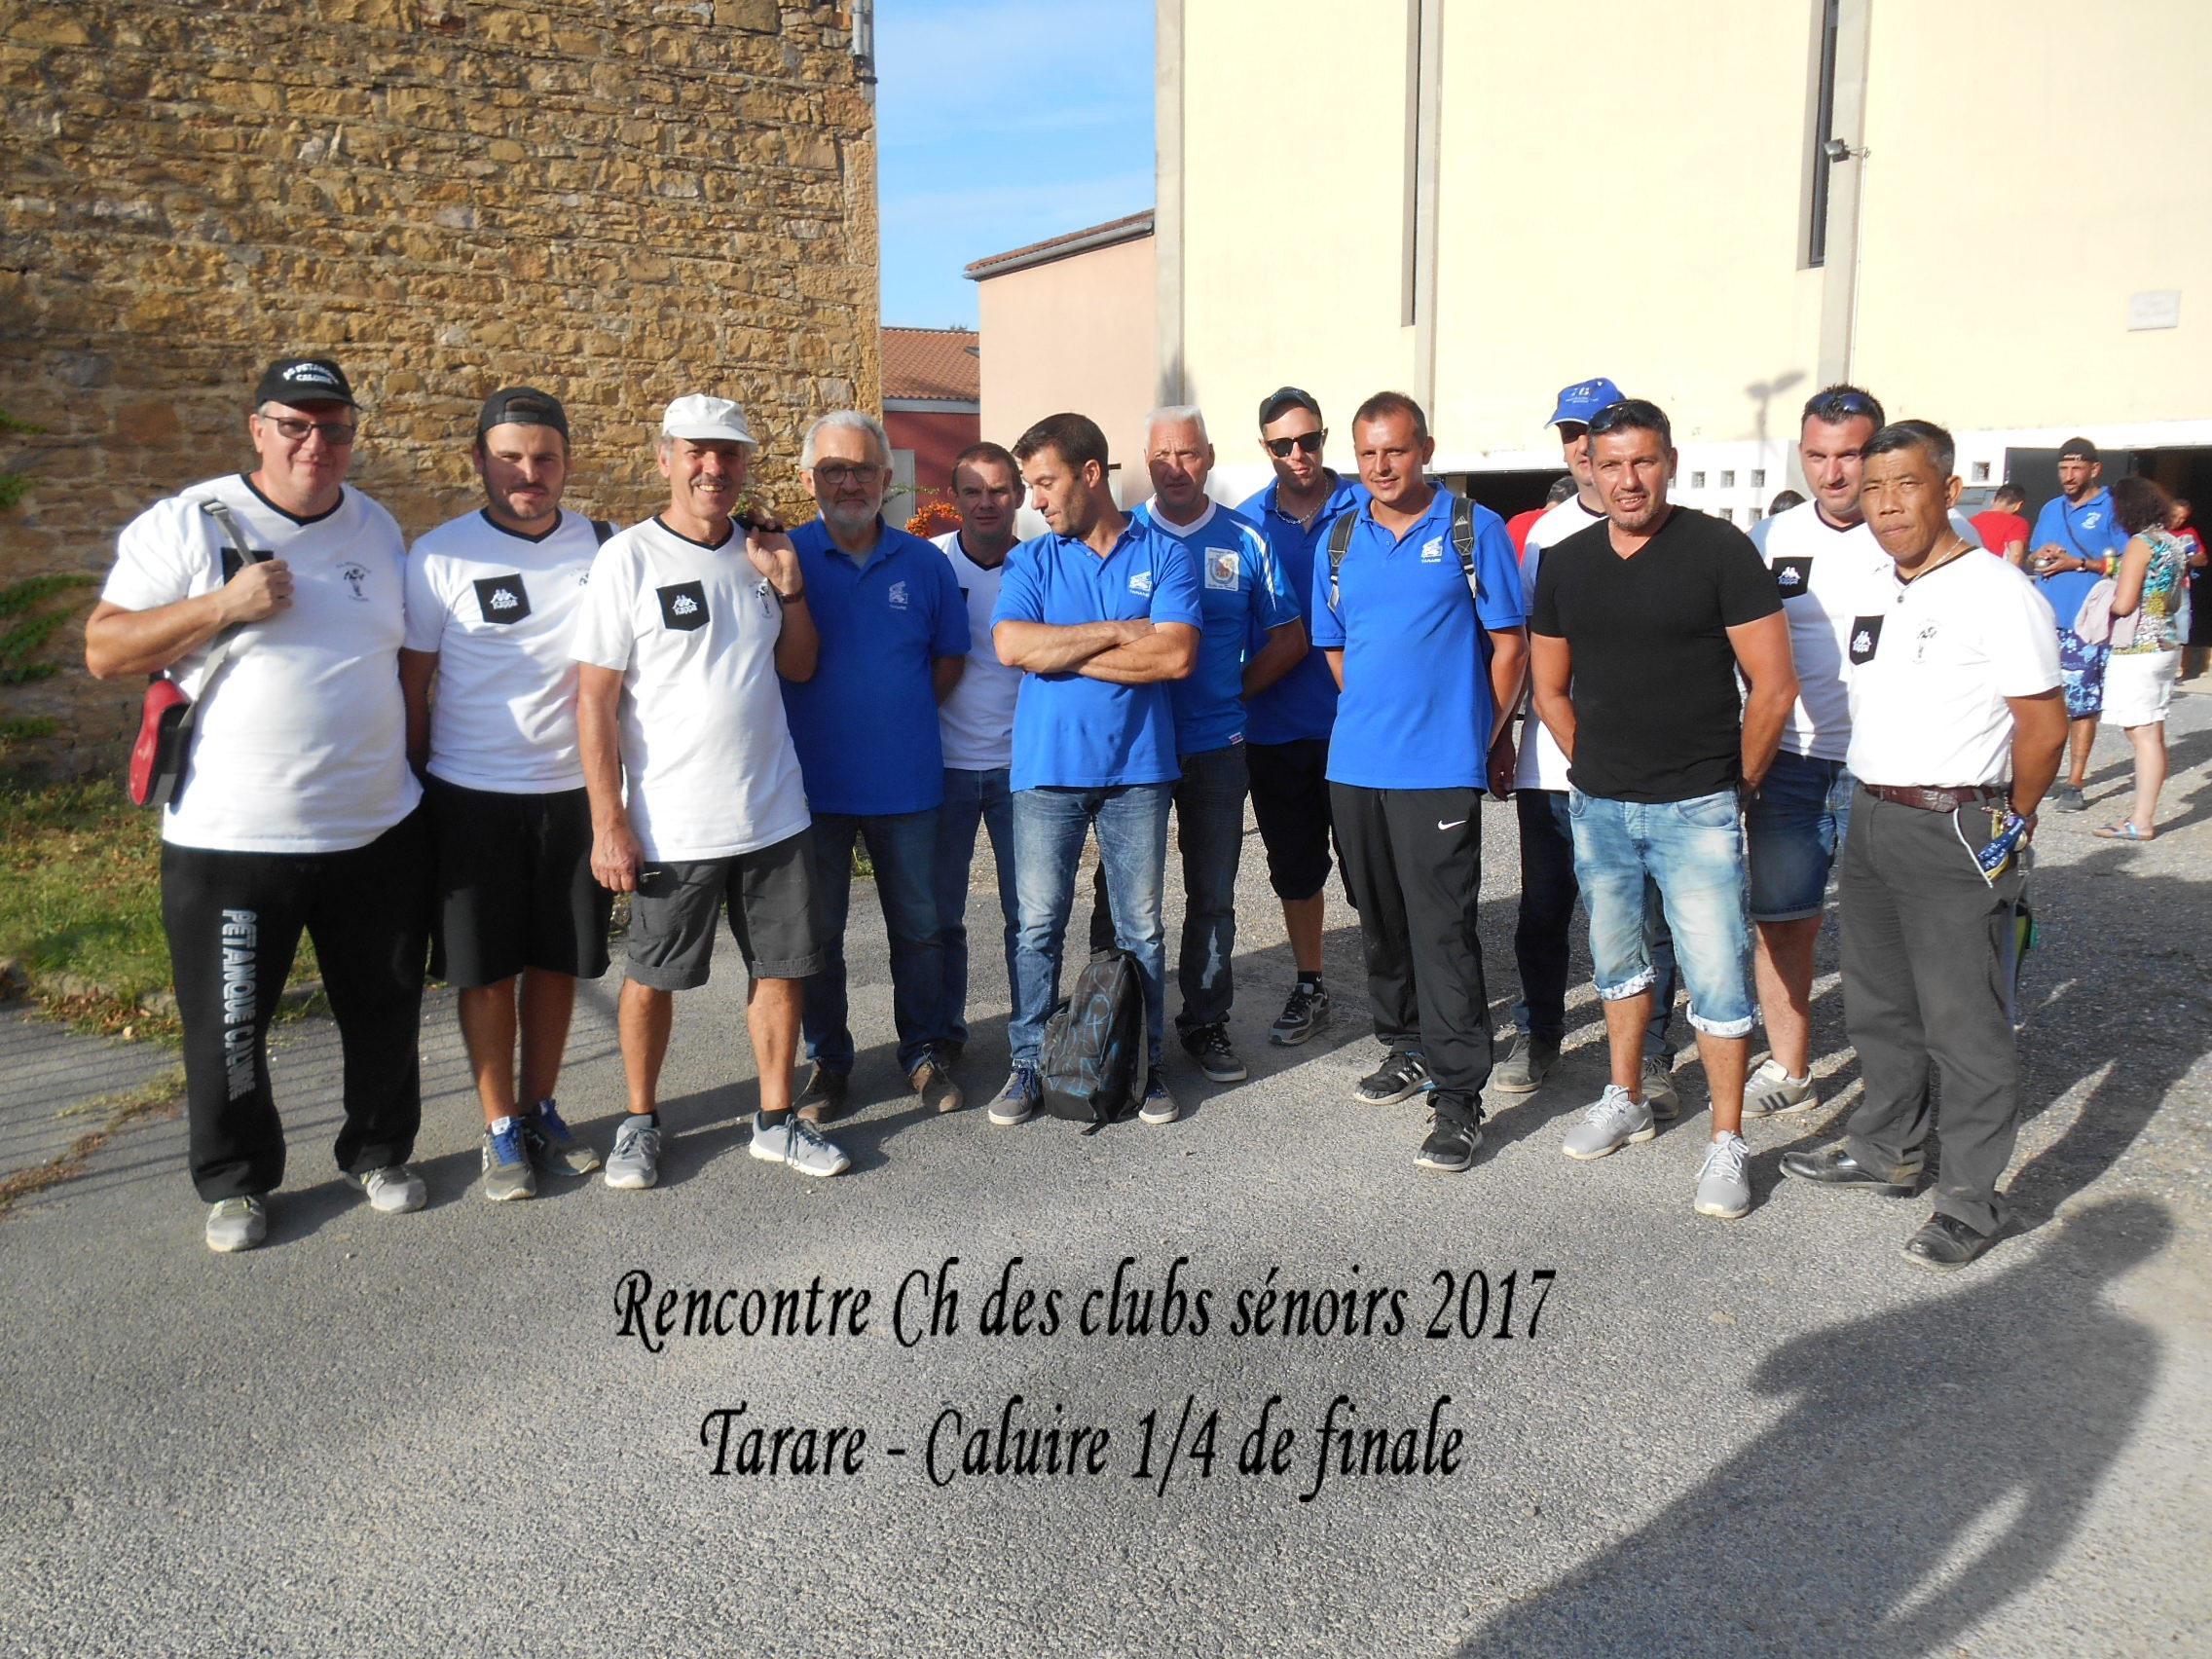 Résultat 1/4 de finale Ch des Clubs Séniors à Couzon.